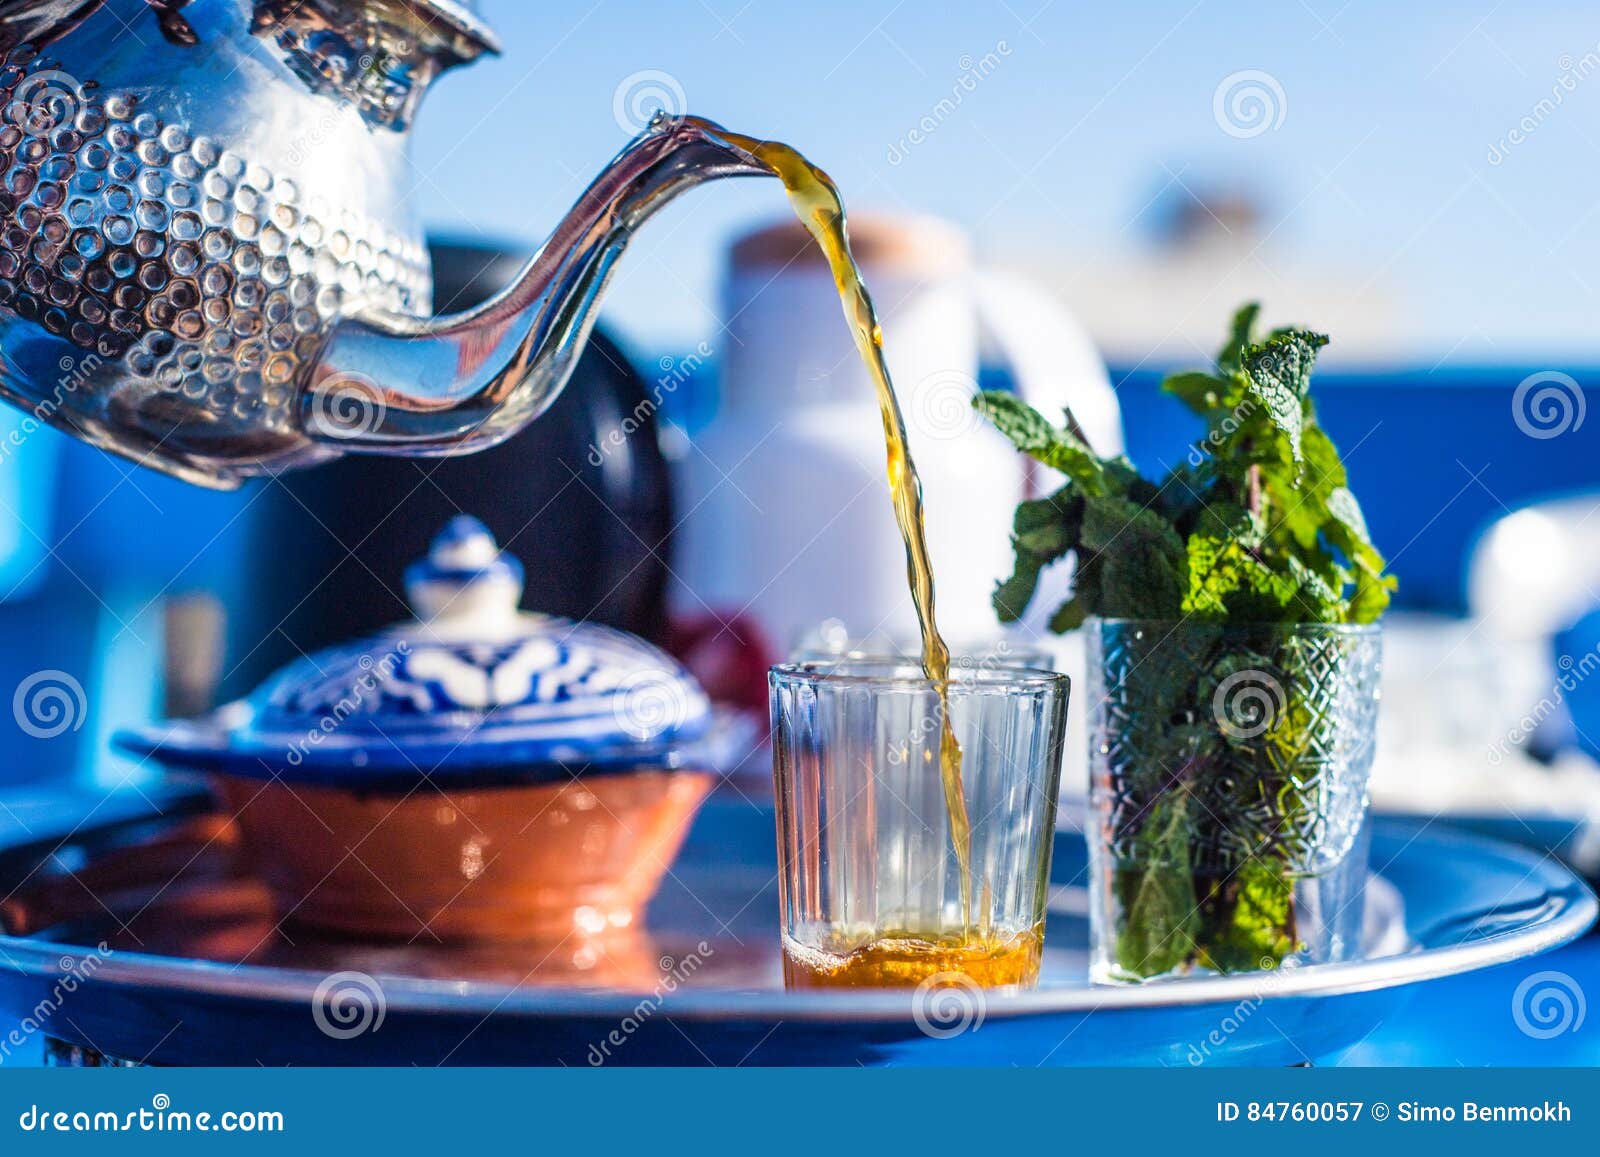 Μαροκινό τσάι πρωινού. Το τσάι στο Μαρόκο είναι το καταναλωμένο ζεστό ποτό στο Μαρόκο, και το μαροκινό δοχείο τσαγιού παράδοσης είναι ένα mythic αντικείμενο σχεδίου που χρησιμοποιείται σήμερα στη διακόσμηση διακοσμήσεων σπιτιών/κουζινών